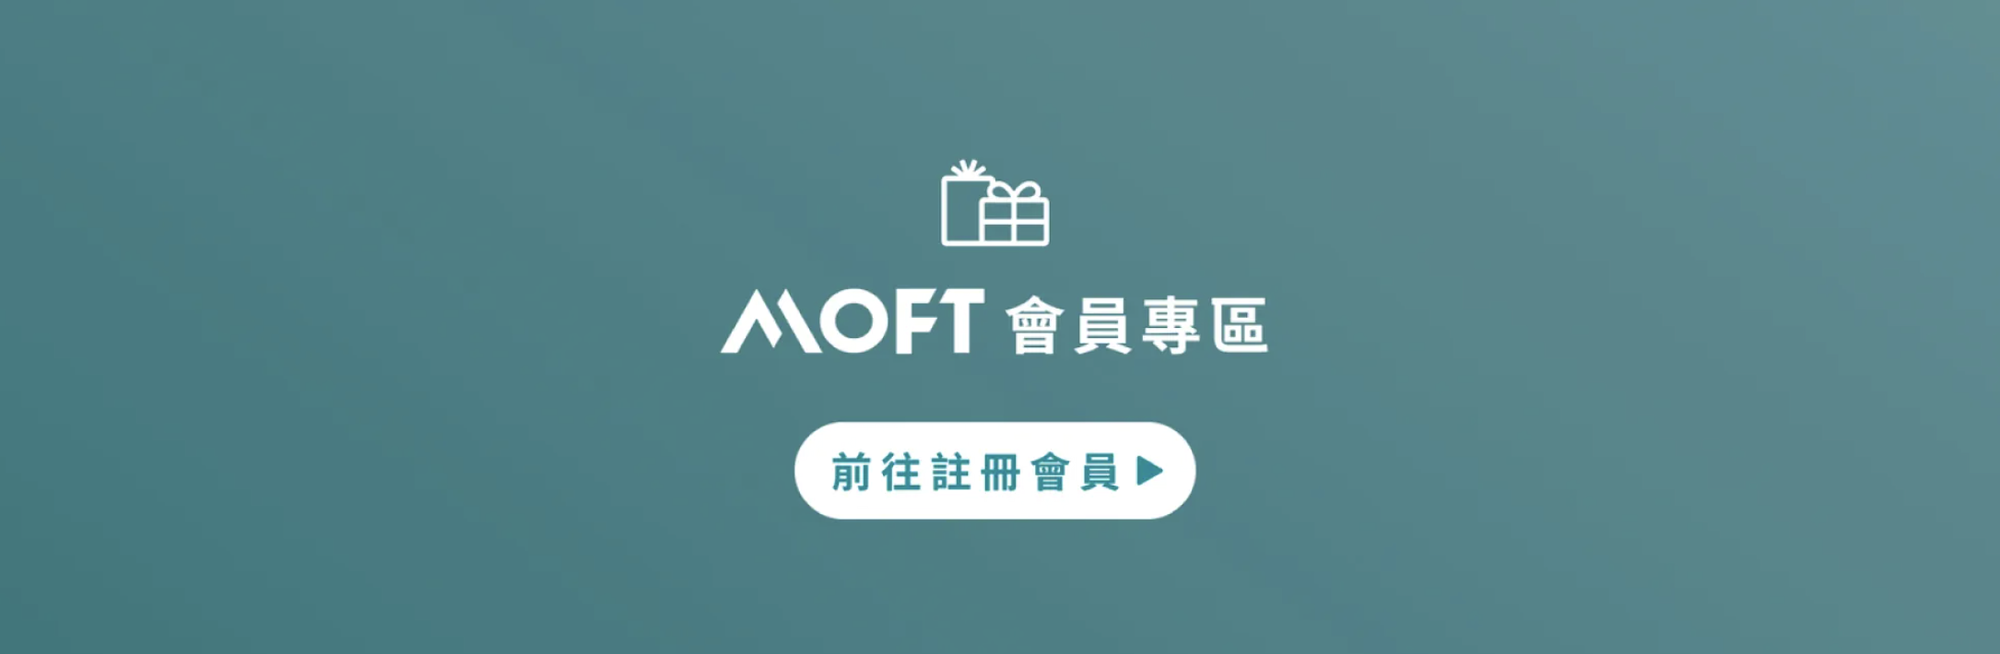 MOFT Taiwan - ECviu 電商口碑評價網站